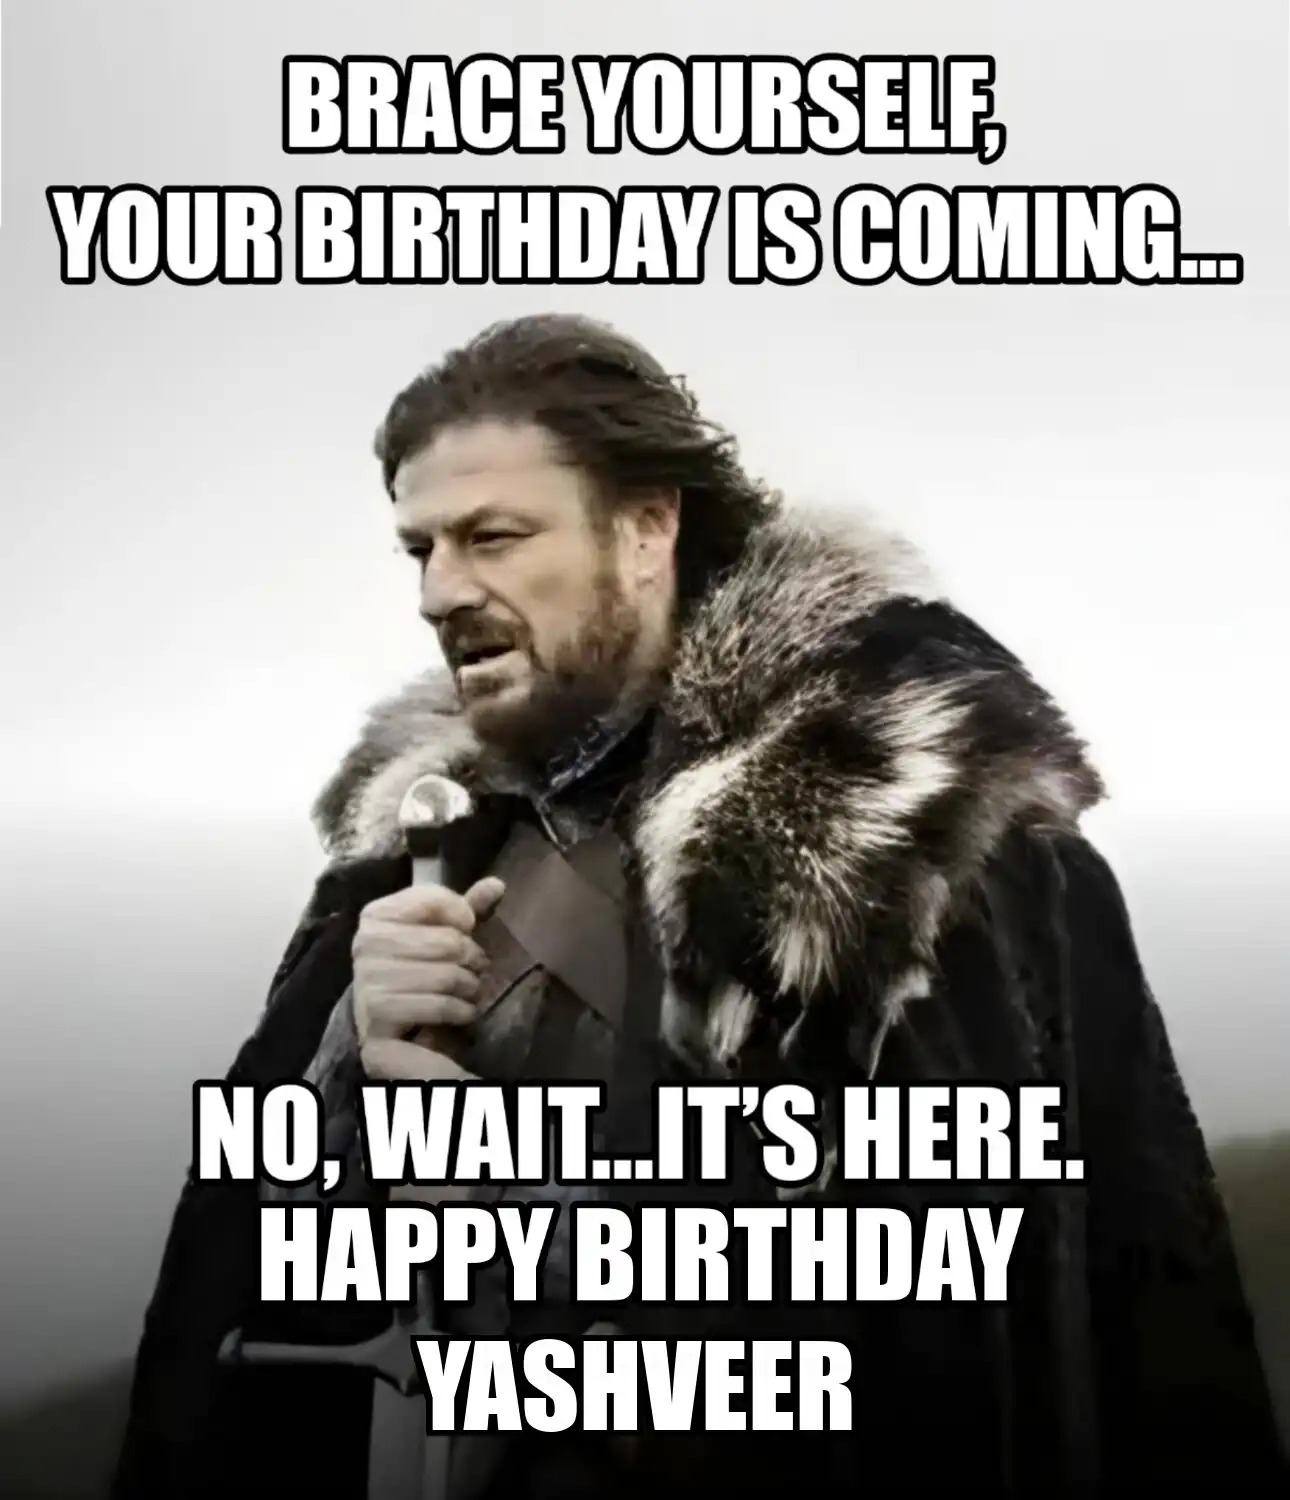 Happy Birthday Yashveer Brace Yourself Your Birthday Is Coming Meme